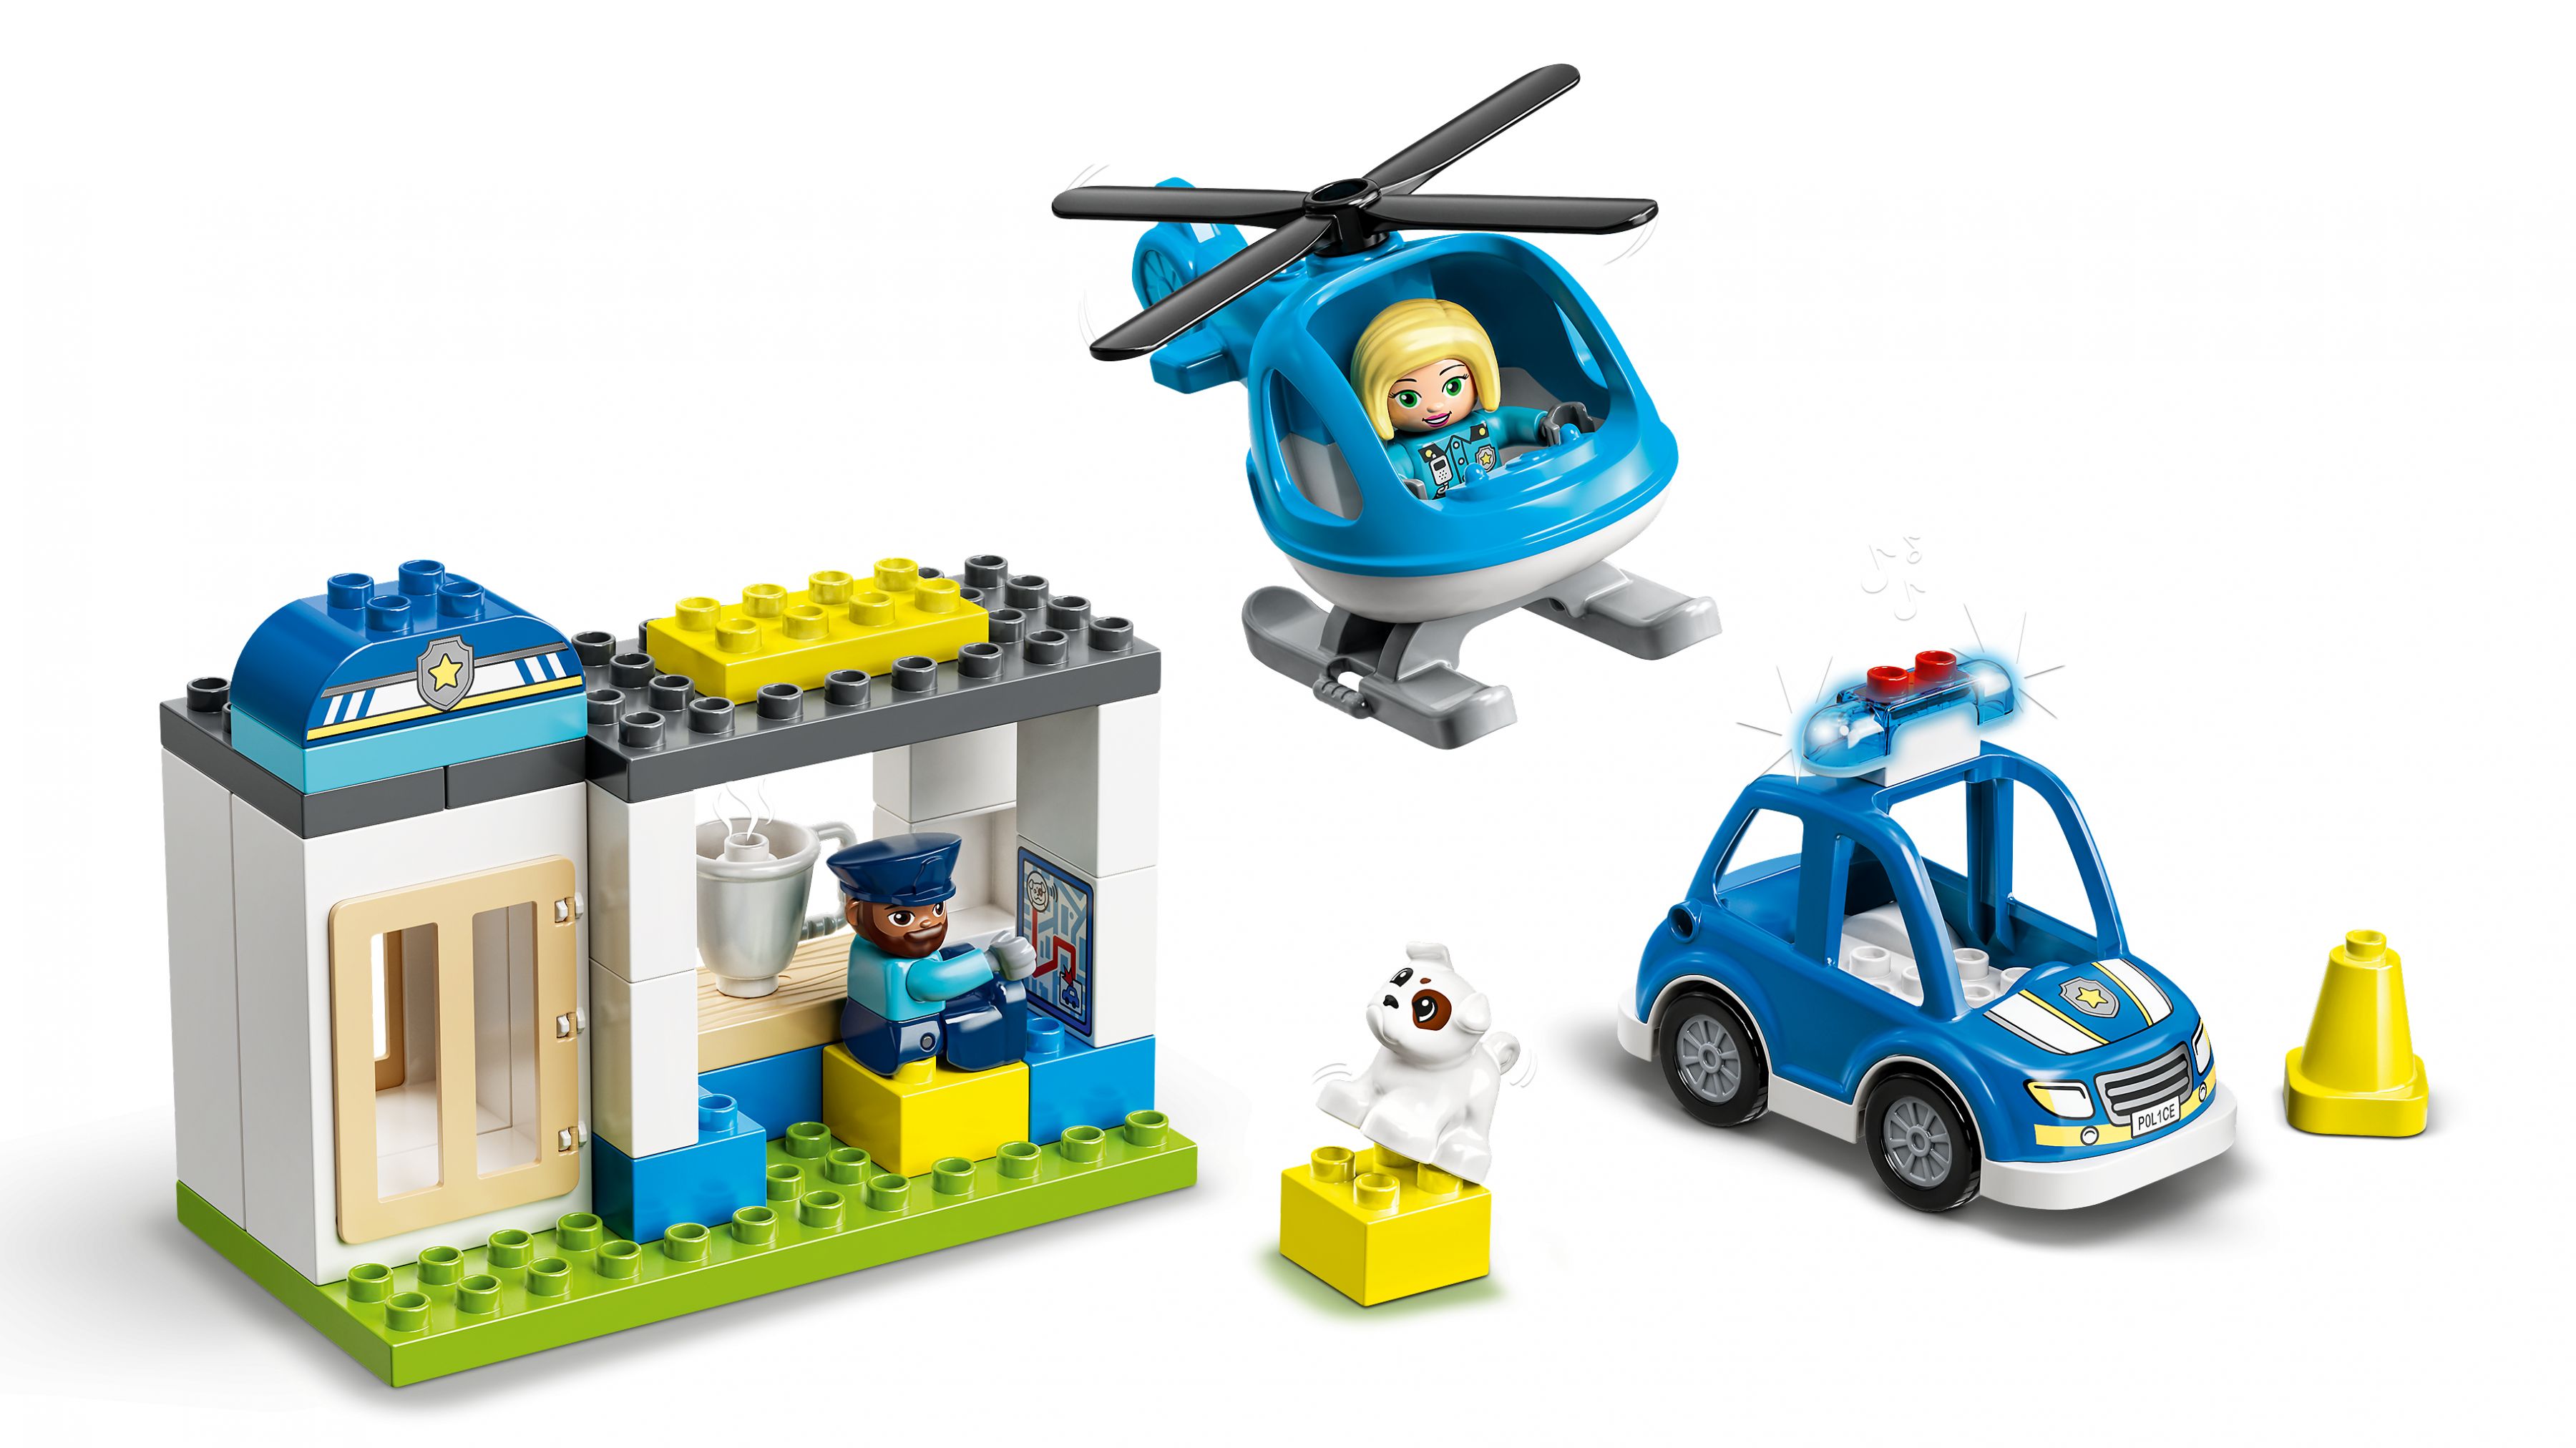 LEGO Duplo 10959 Polizeistation mit Hubschrauber LEGO_10959_WEB_SEC04_NOBG.jpg